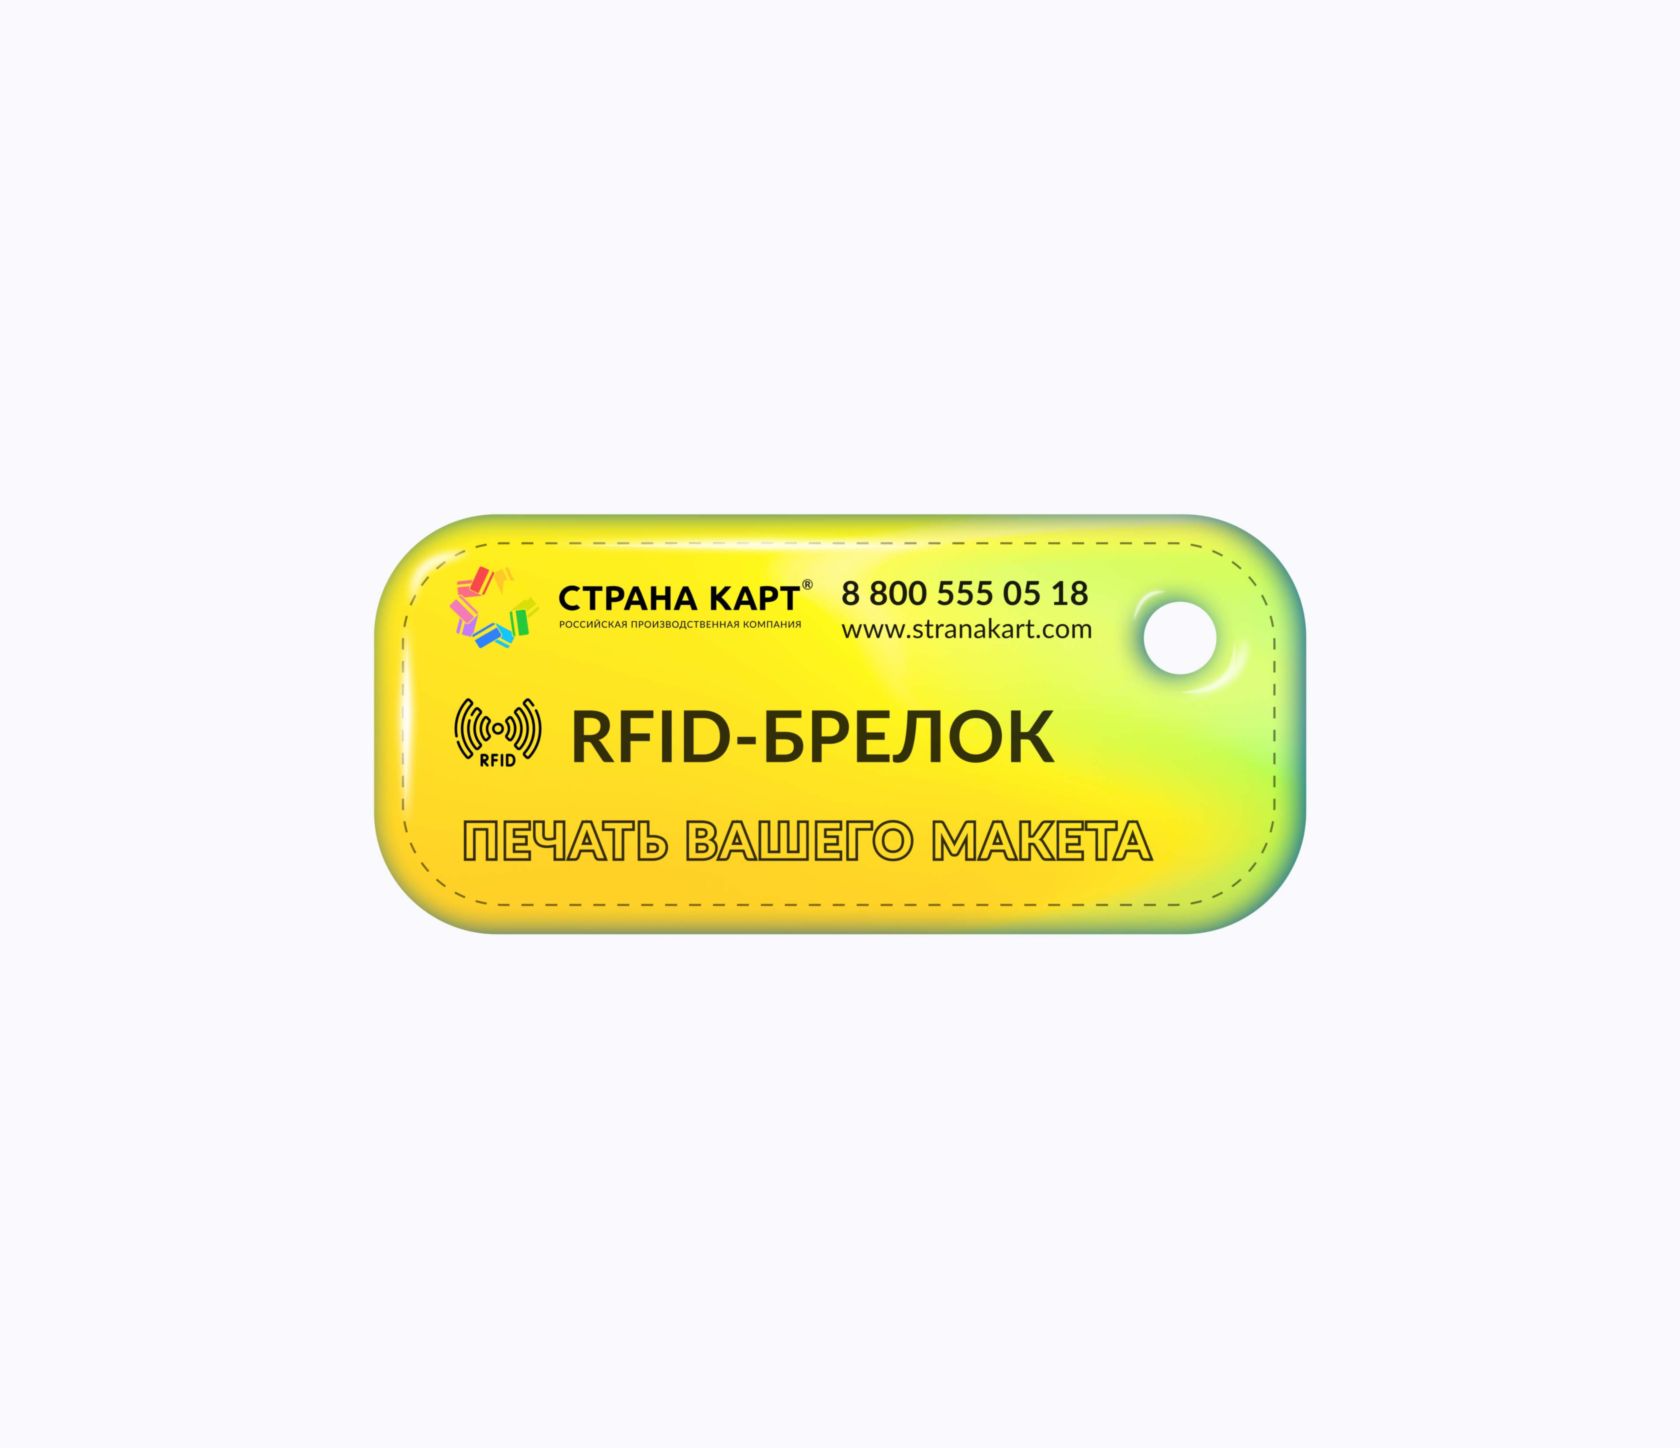 Прямоугольные Мини RFID-брелоки NEOKEY® с чипом для систем контроля и управления доступом СКУД RFID-брелоки NEOKEY® с чипом для систем контроля и управления доступом СКУД